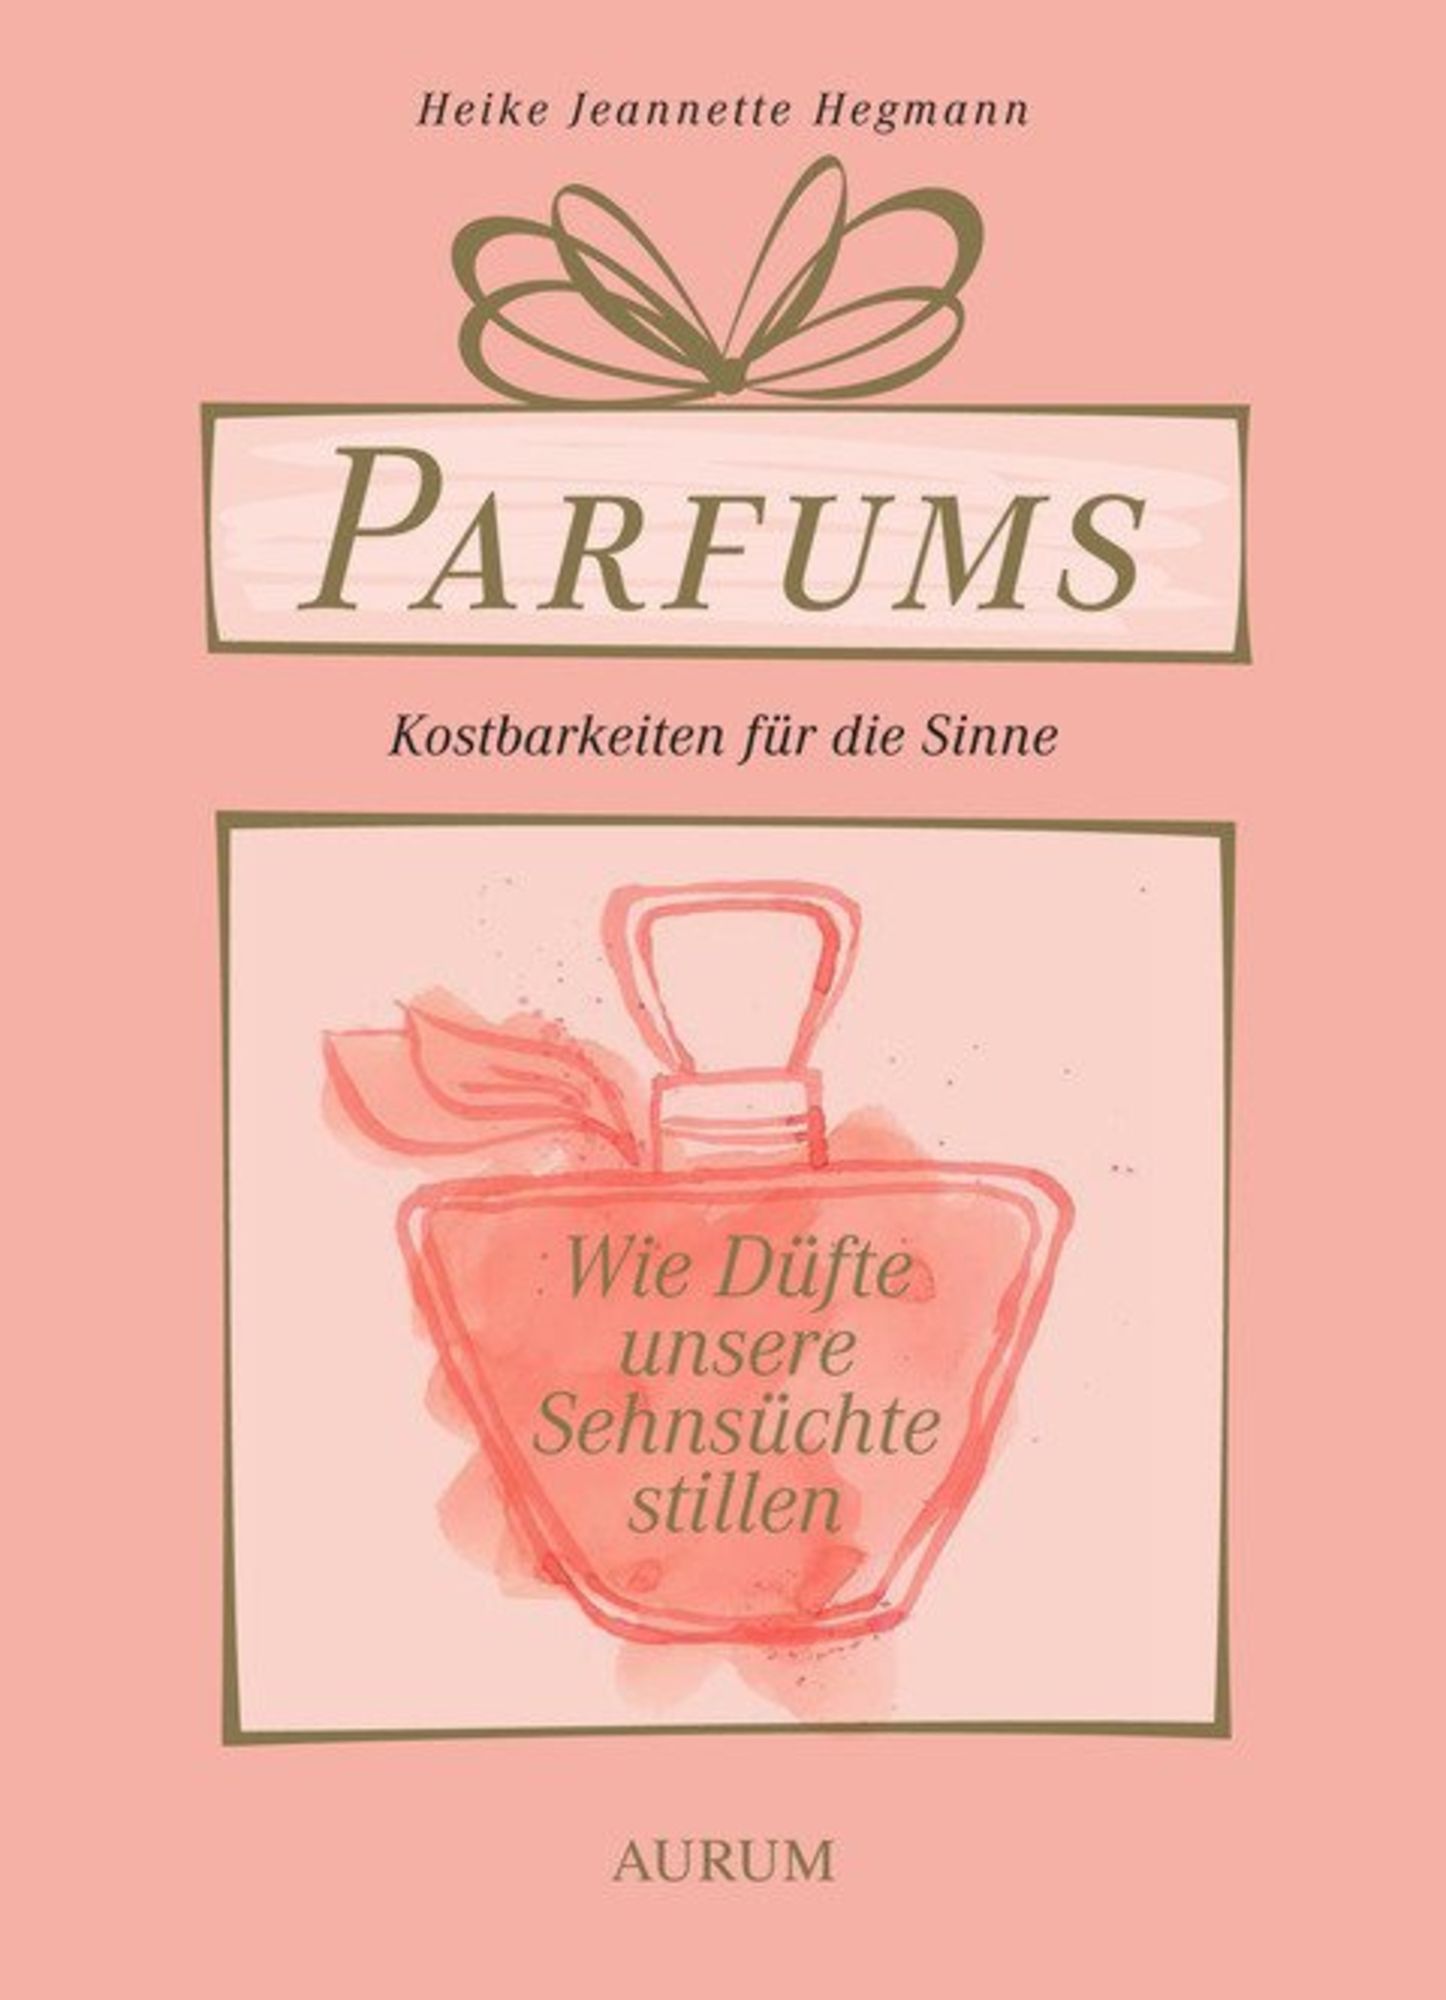 Parfums - Kostbarkeiten für die Sinne' von 'Heike Jeannette Hegmann' - Buch  - '978-3-95883-003-5